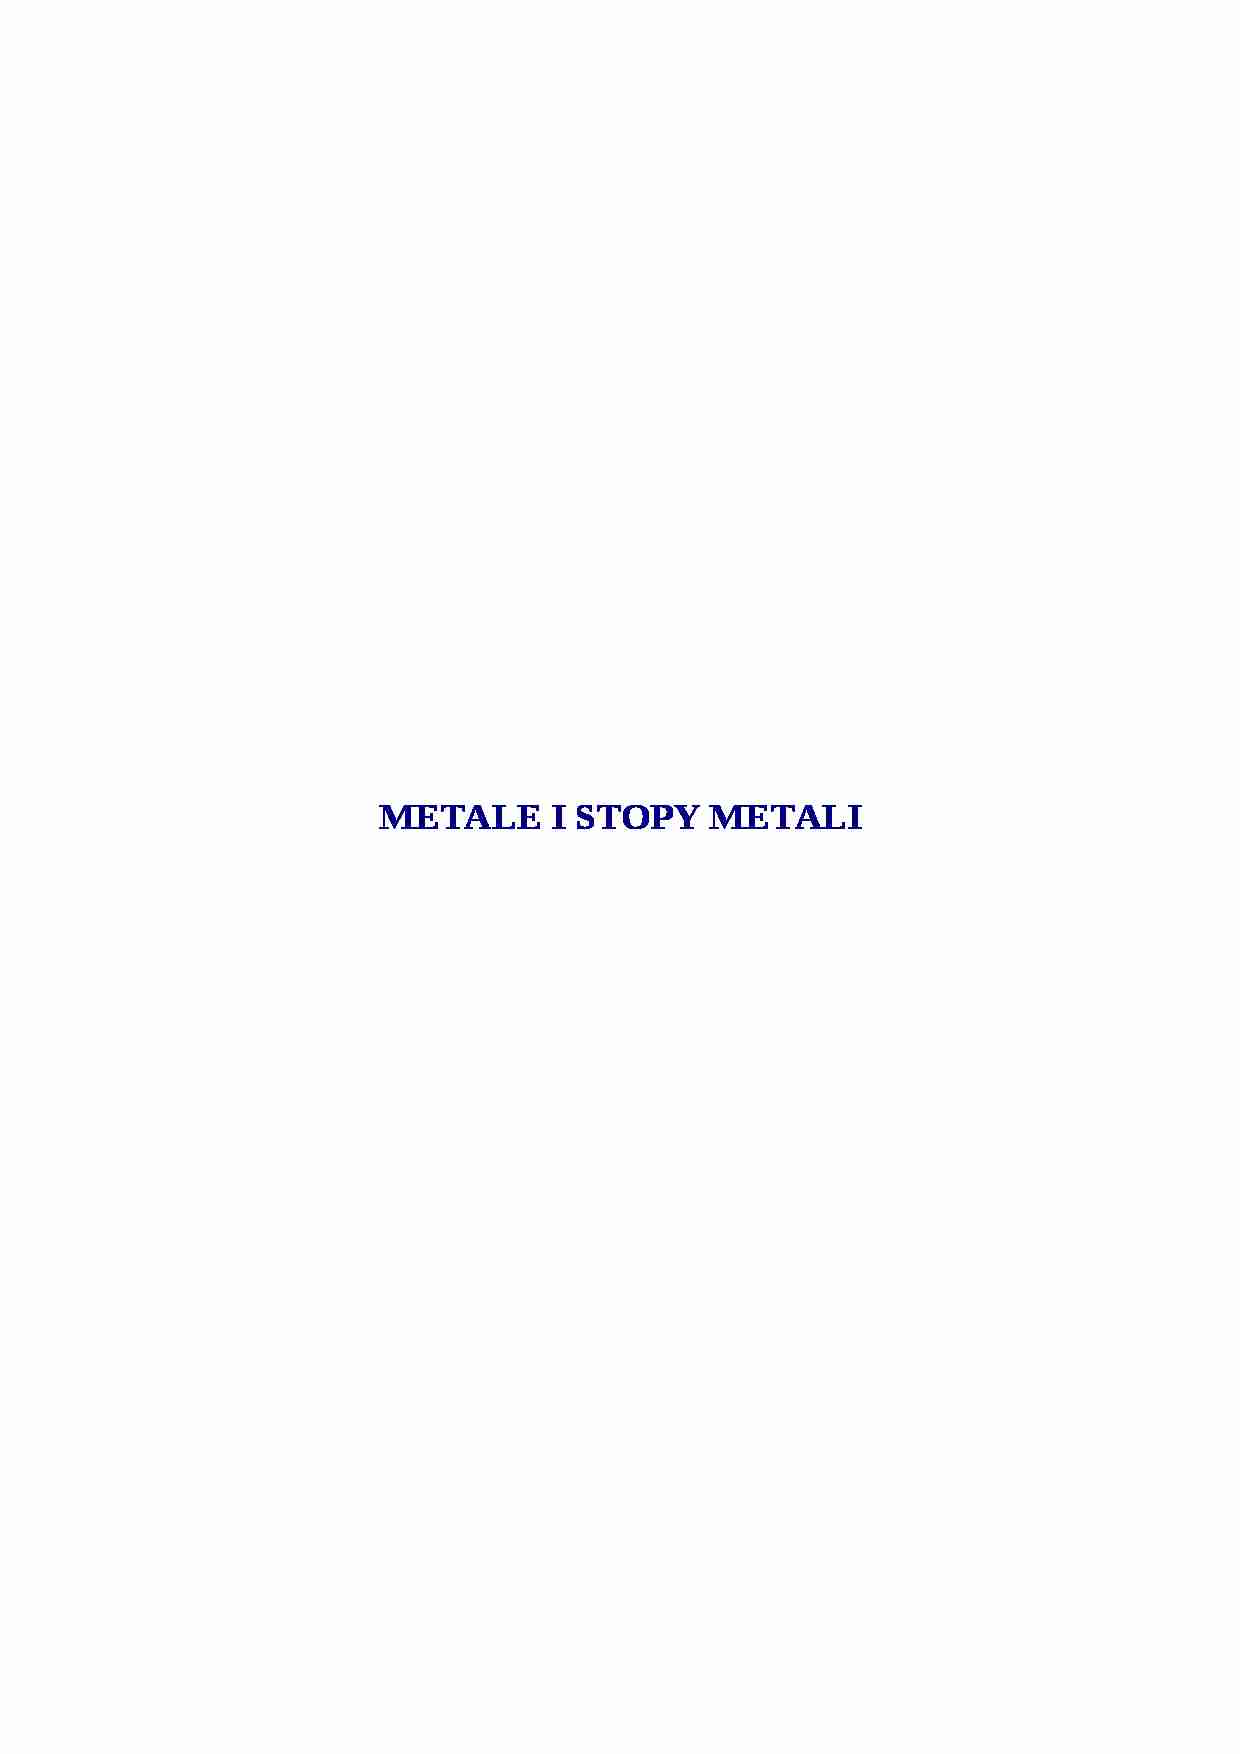 Metale i stopy metali - omówienie - strona 1